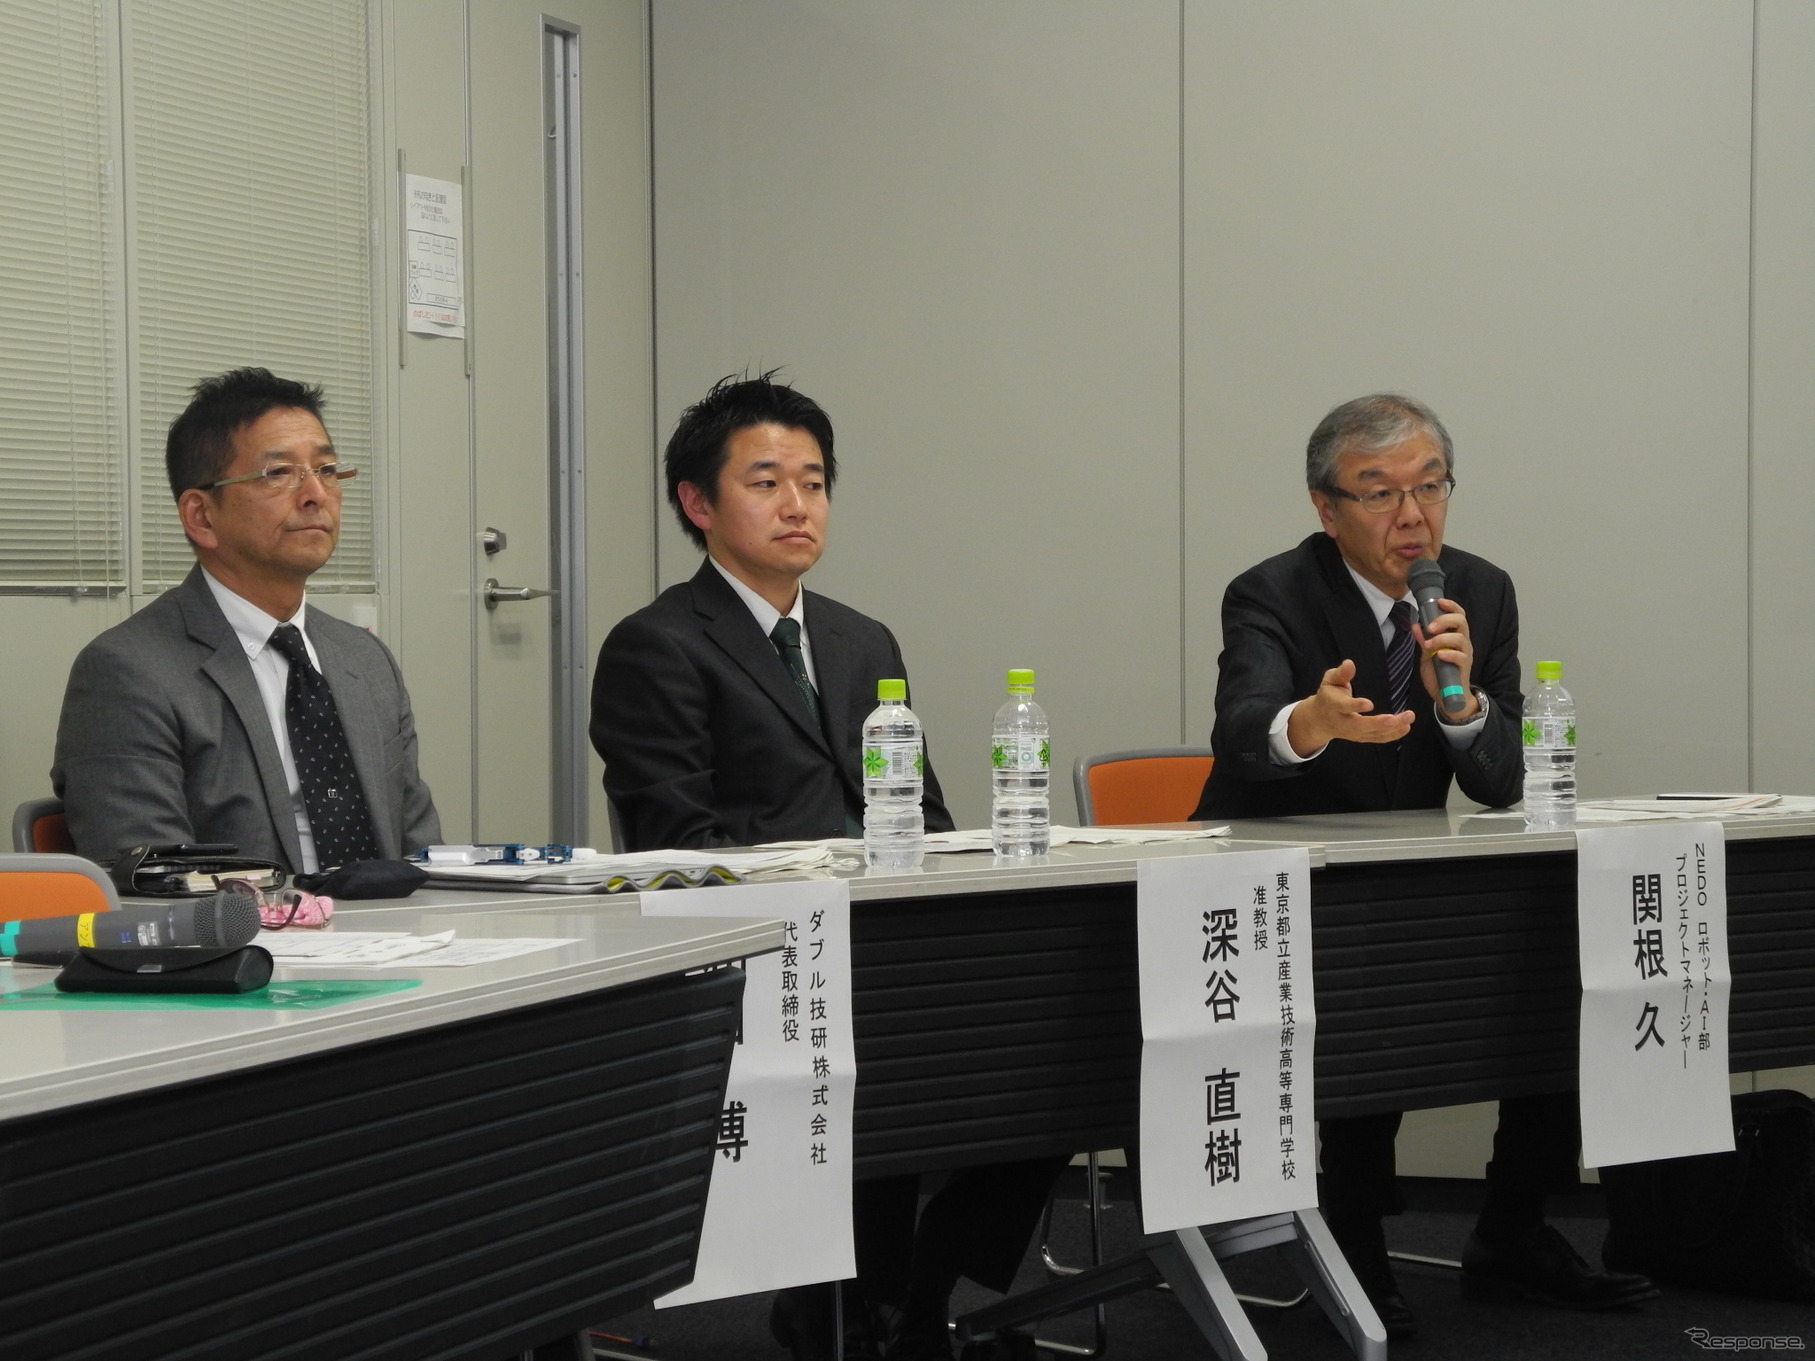 左からダブル技研の和田博社長、都立産業技術高専の深谷直樹准教授、NEDOロボット・AI部の関根久プロジェクトマネージャー